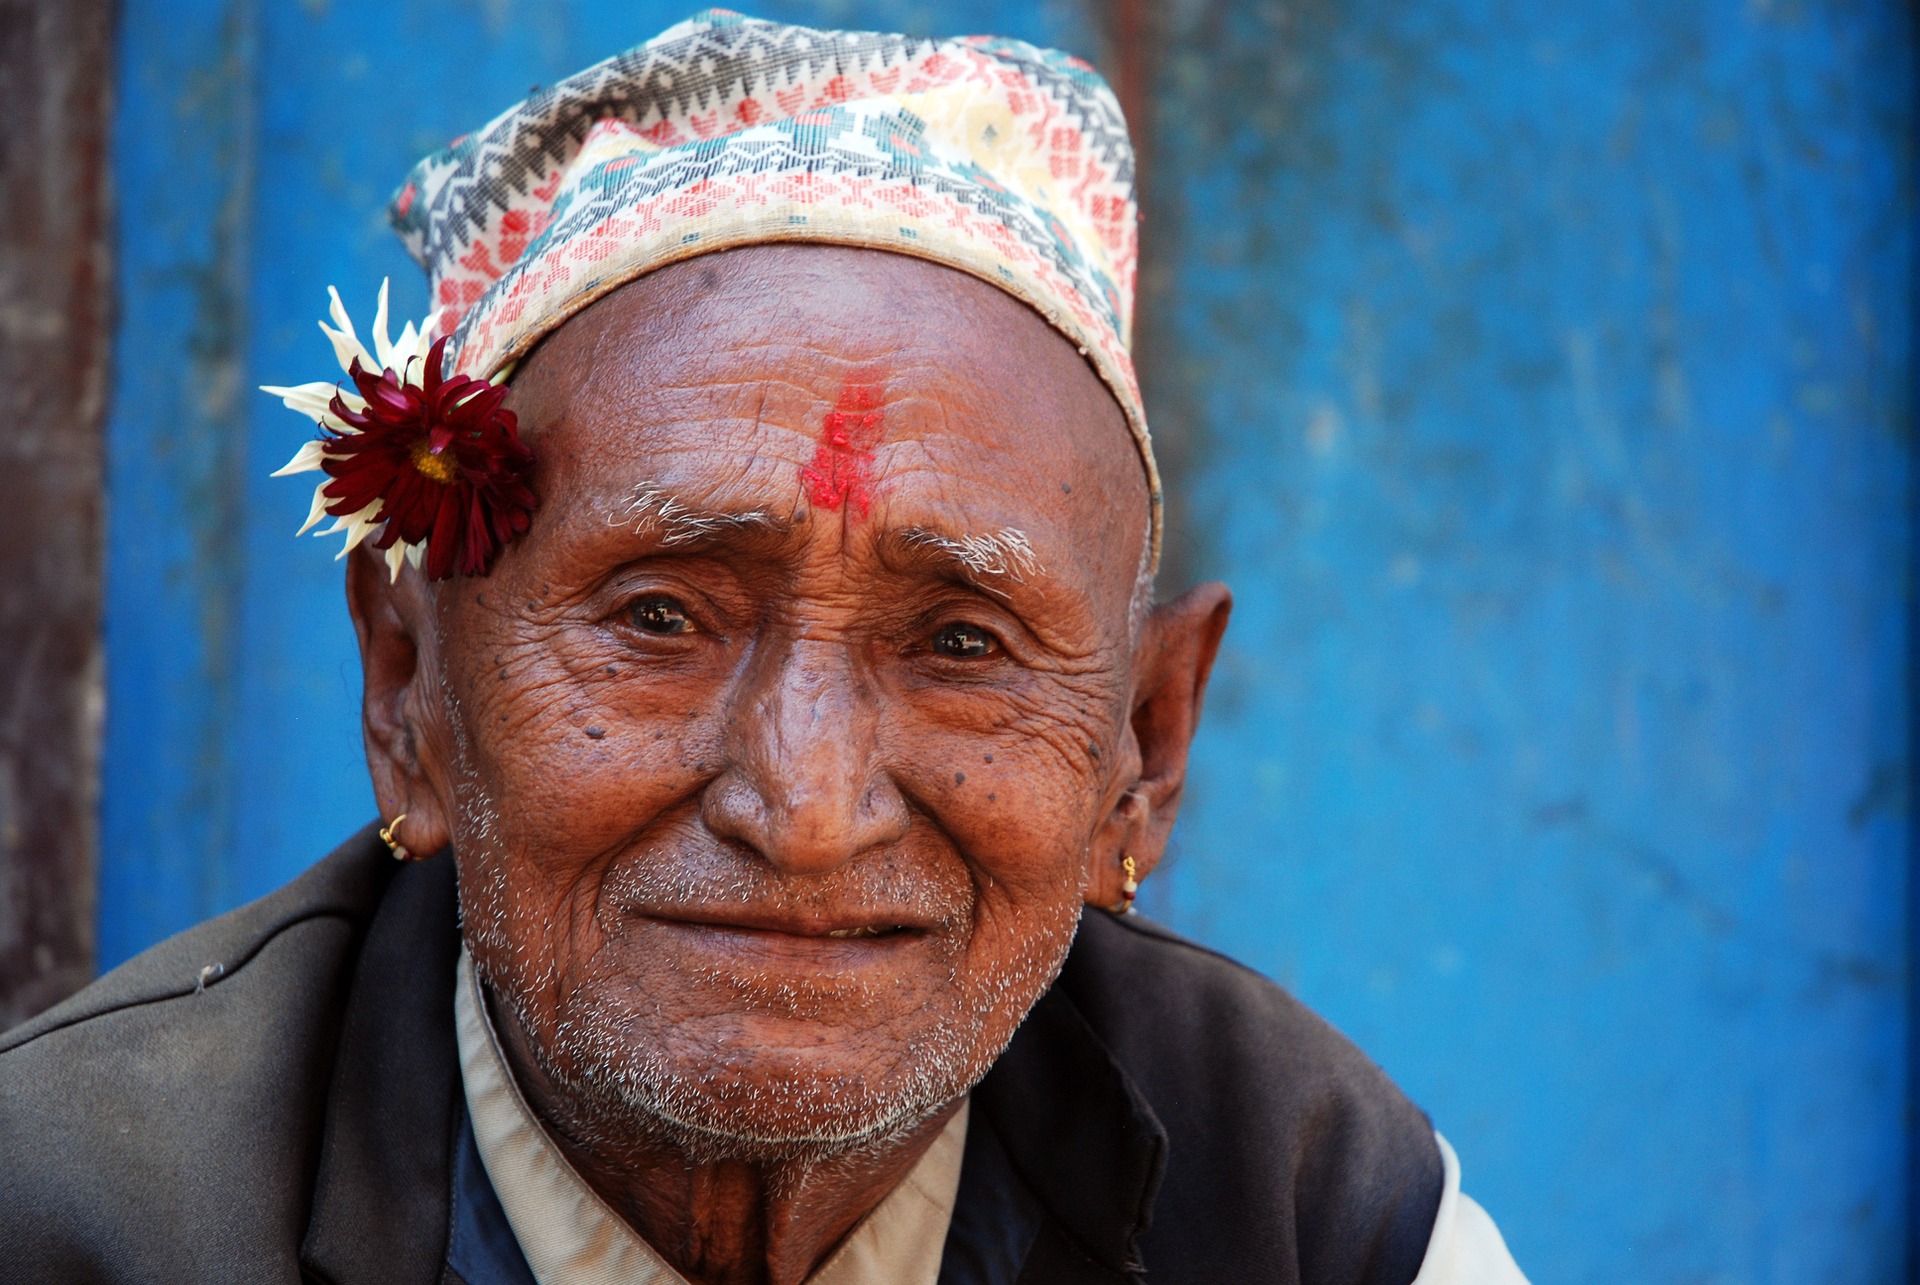 Am Tag der Senioren wird an die Situation der Senioren rund um die Welt gedacht, wie hier in Nepal. Quelle: pixabay.de